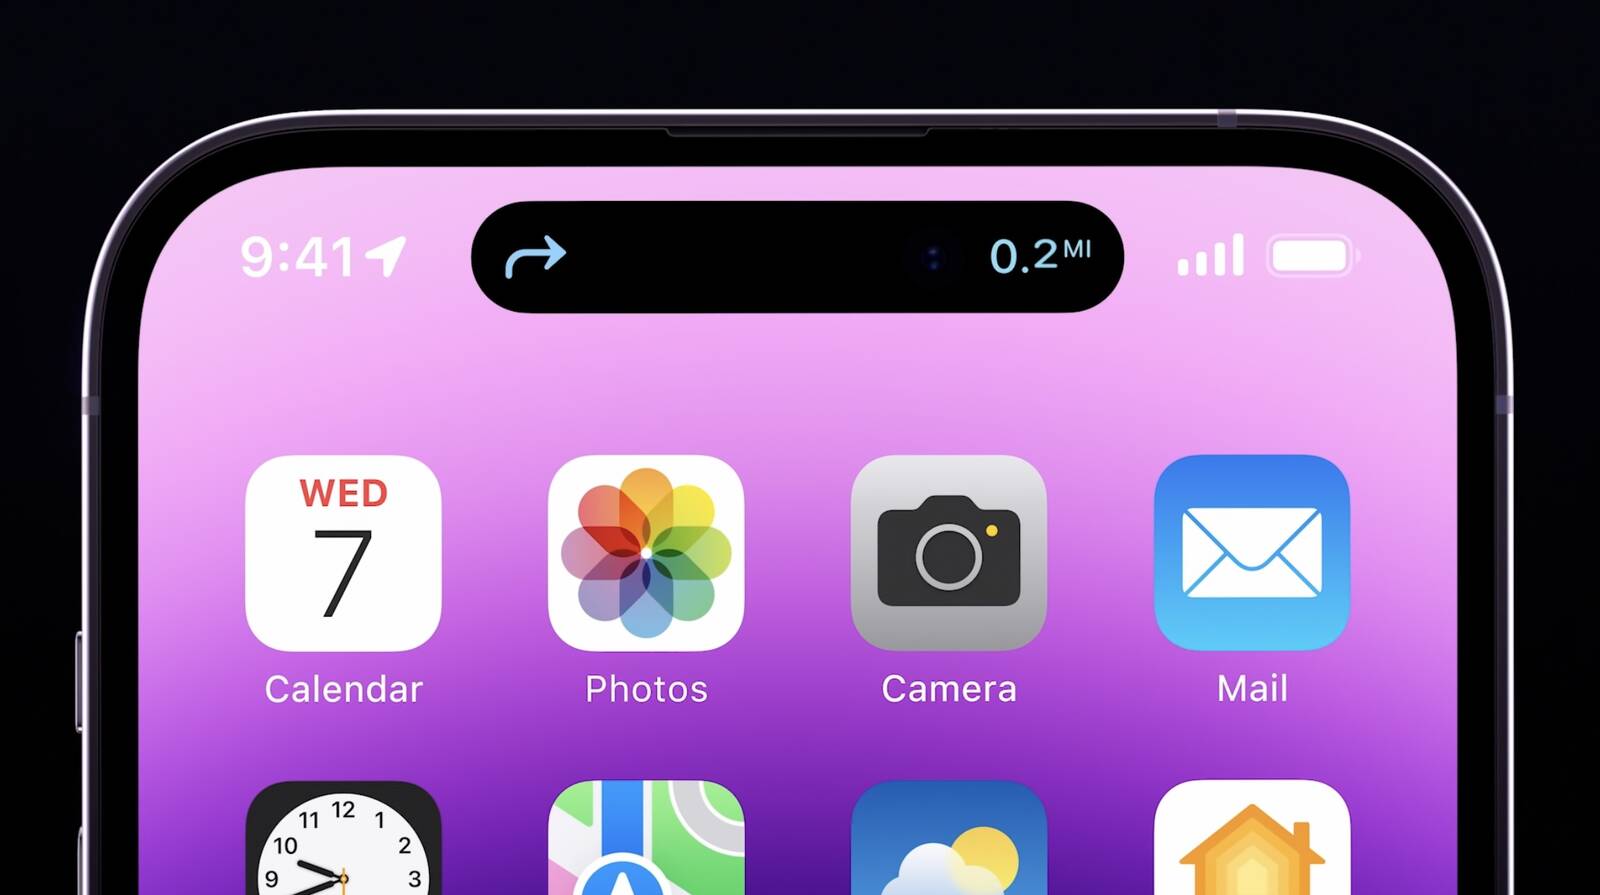 Một màn hình thiết kế chất lượng là nhân tố vô cùng quan trọng khi sử dụng smartphone, và iPhone 14 Pro là lựa chọn tuyệt vời cho bạn. Với độ phân giải cao và tốc độ phản hồi nhanh, màn hình của iPhone 14 Pro sẽ mang đến cho bạn một trải nghiệm thực sự tuyệt vời. Xem hình liên quan để khám phá vẻ đẹp tuyệt đỉnh của màn hình.